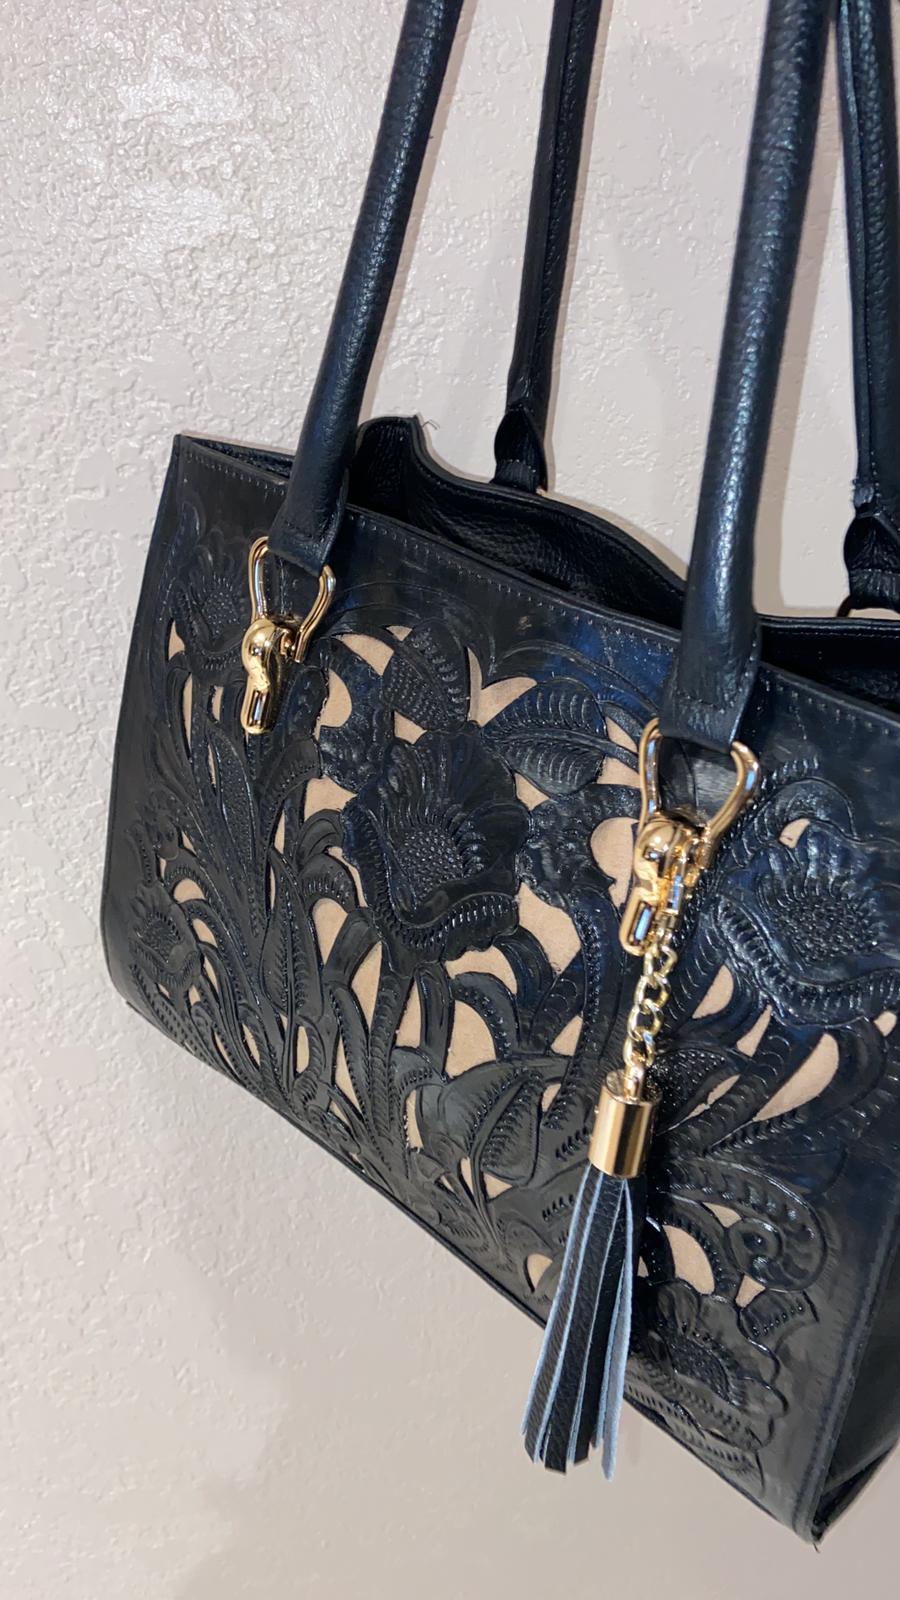 100% leather purse